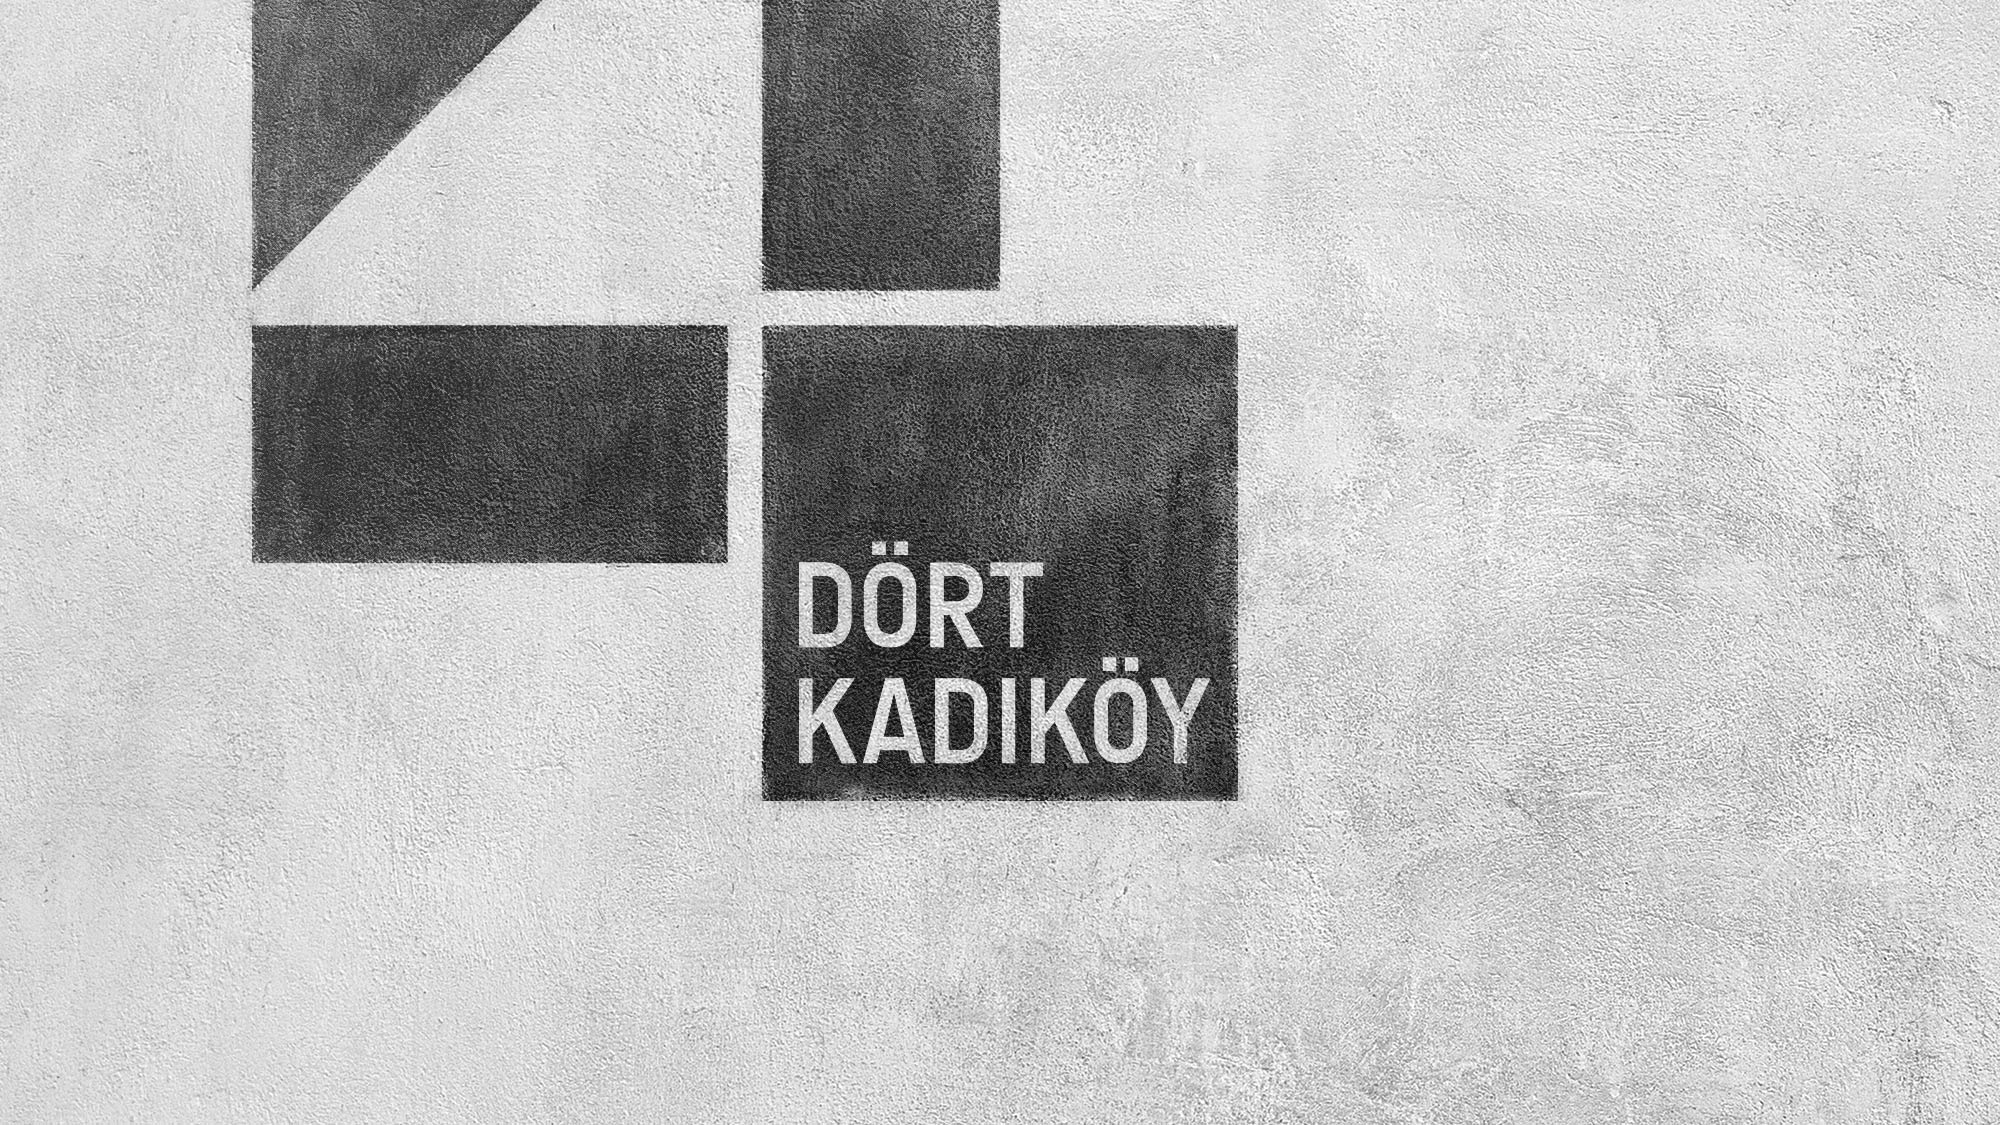 Dortkadikoy_03